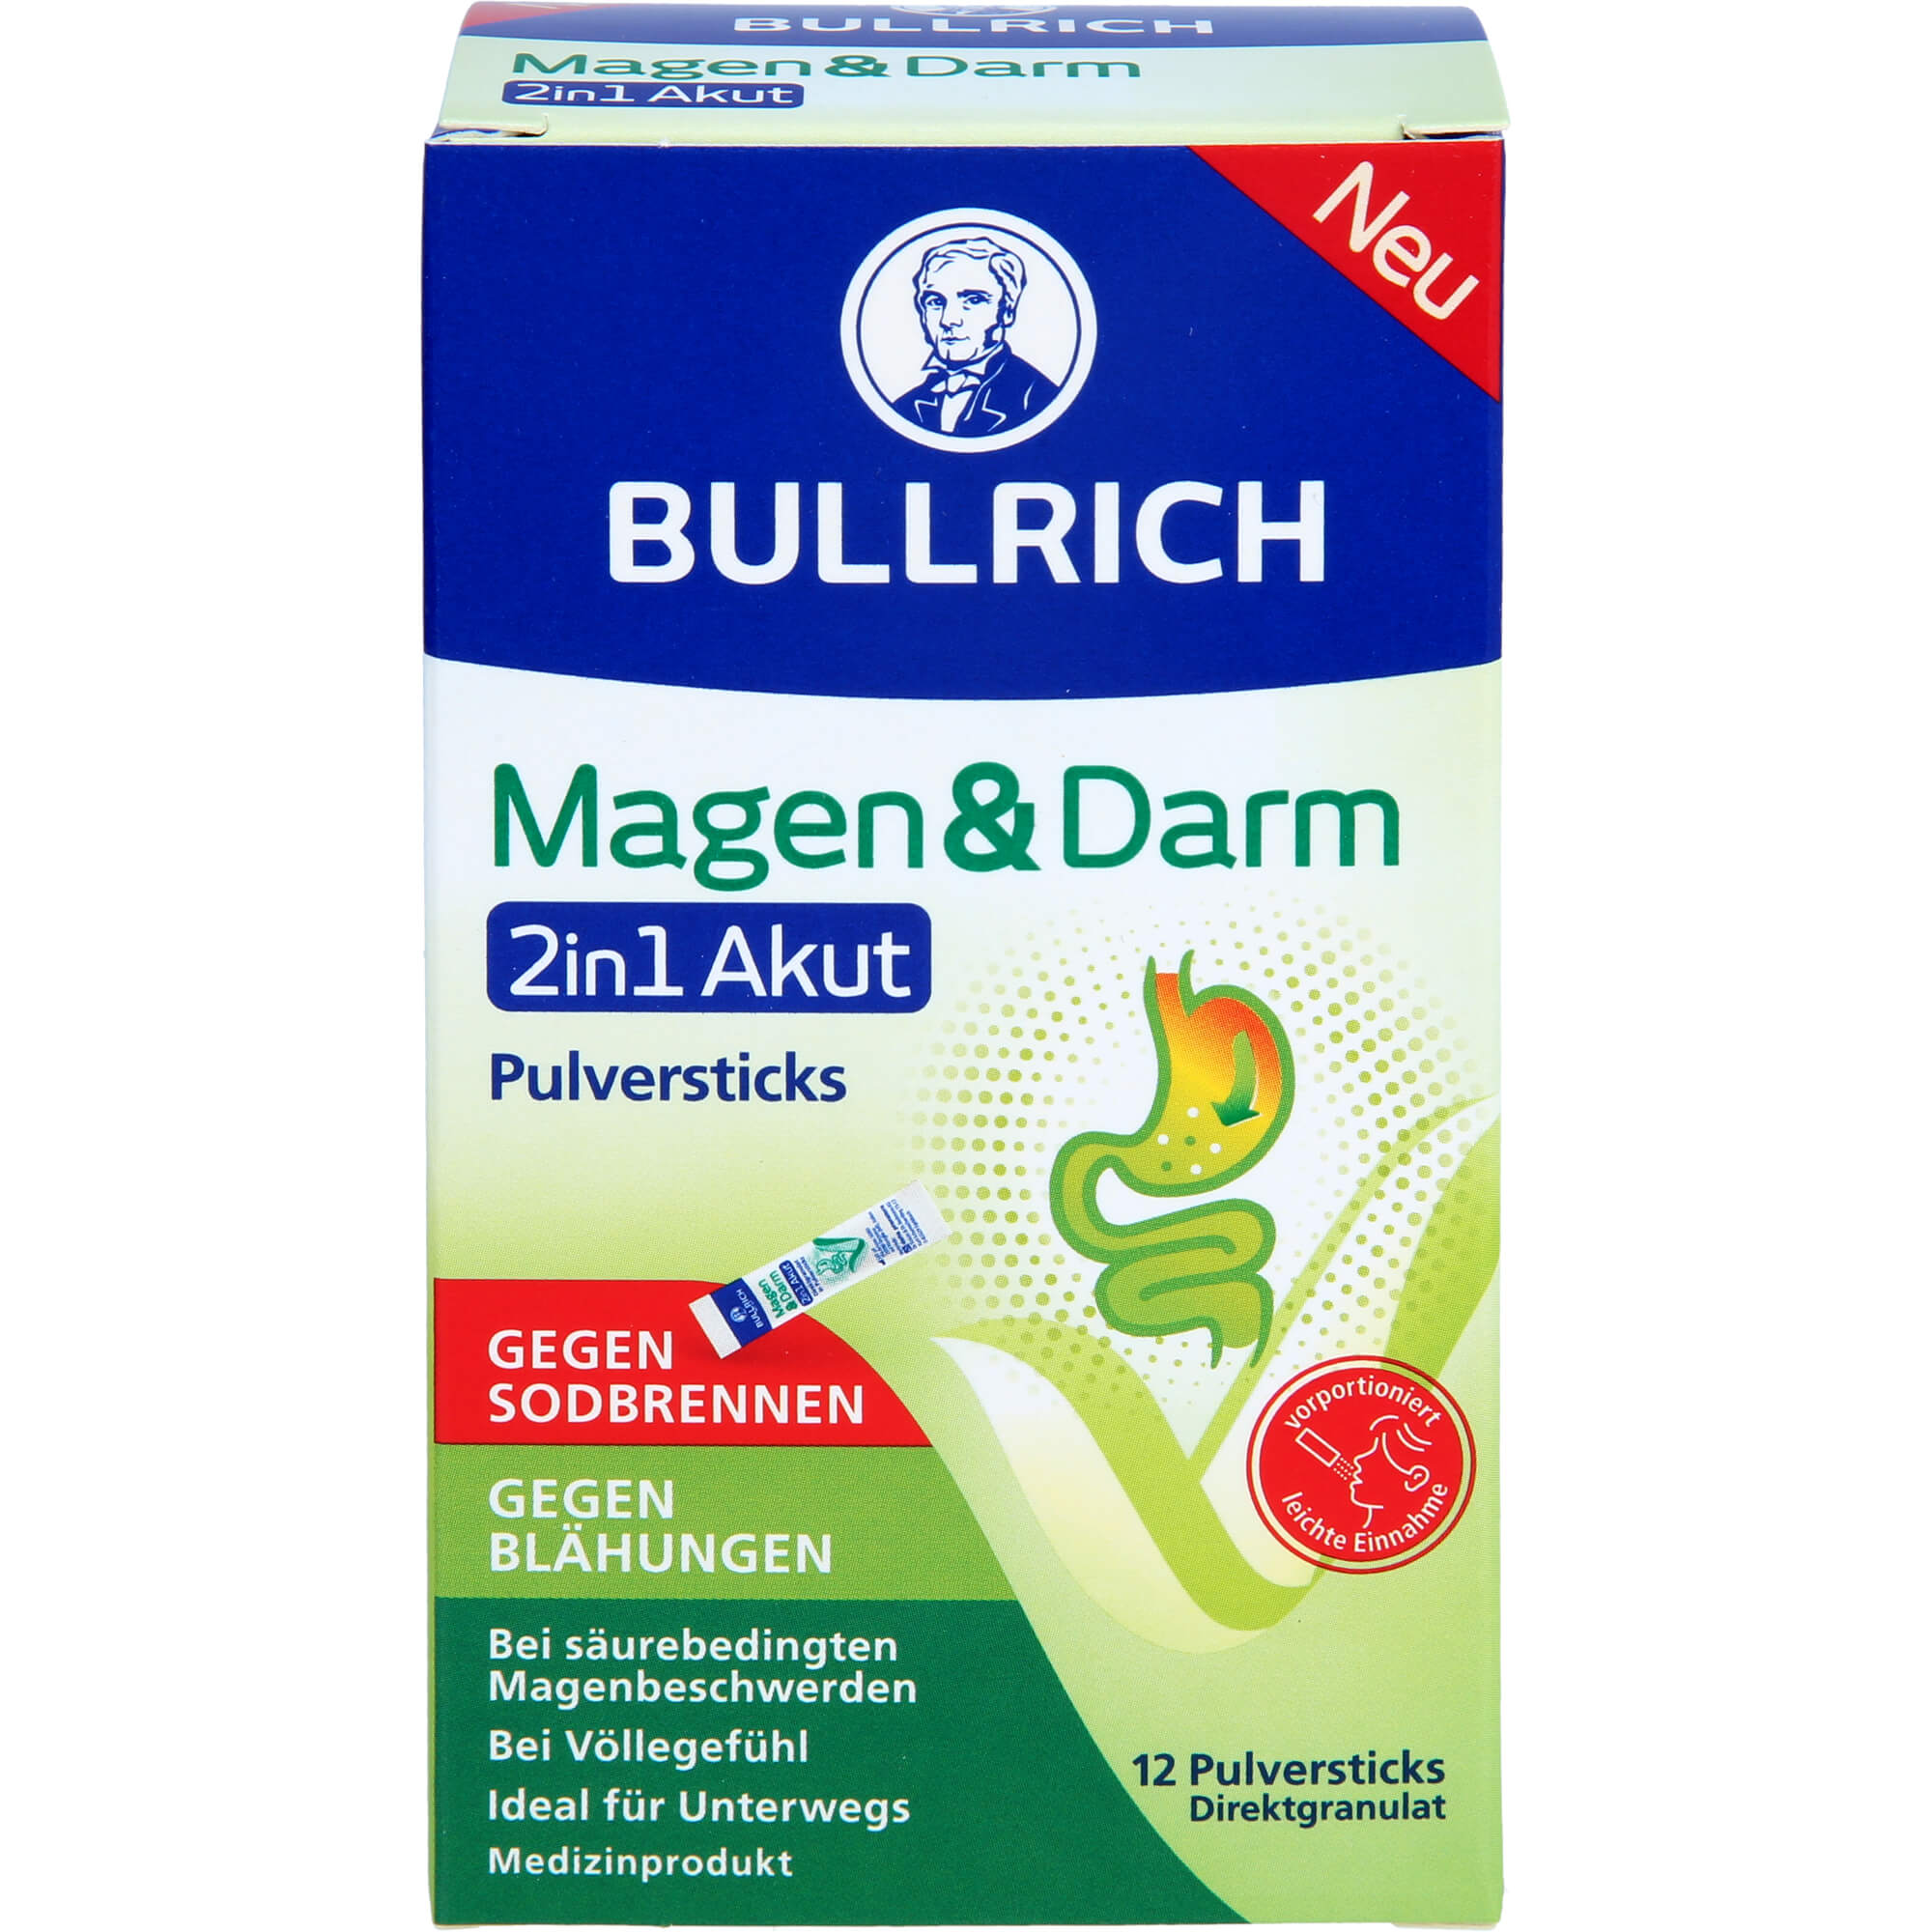 BULLRICH Magen & Darm 2in1 Akut Pulversticks